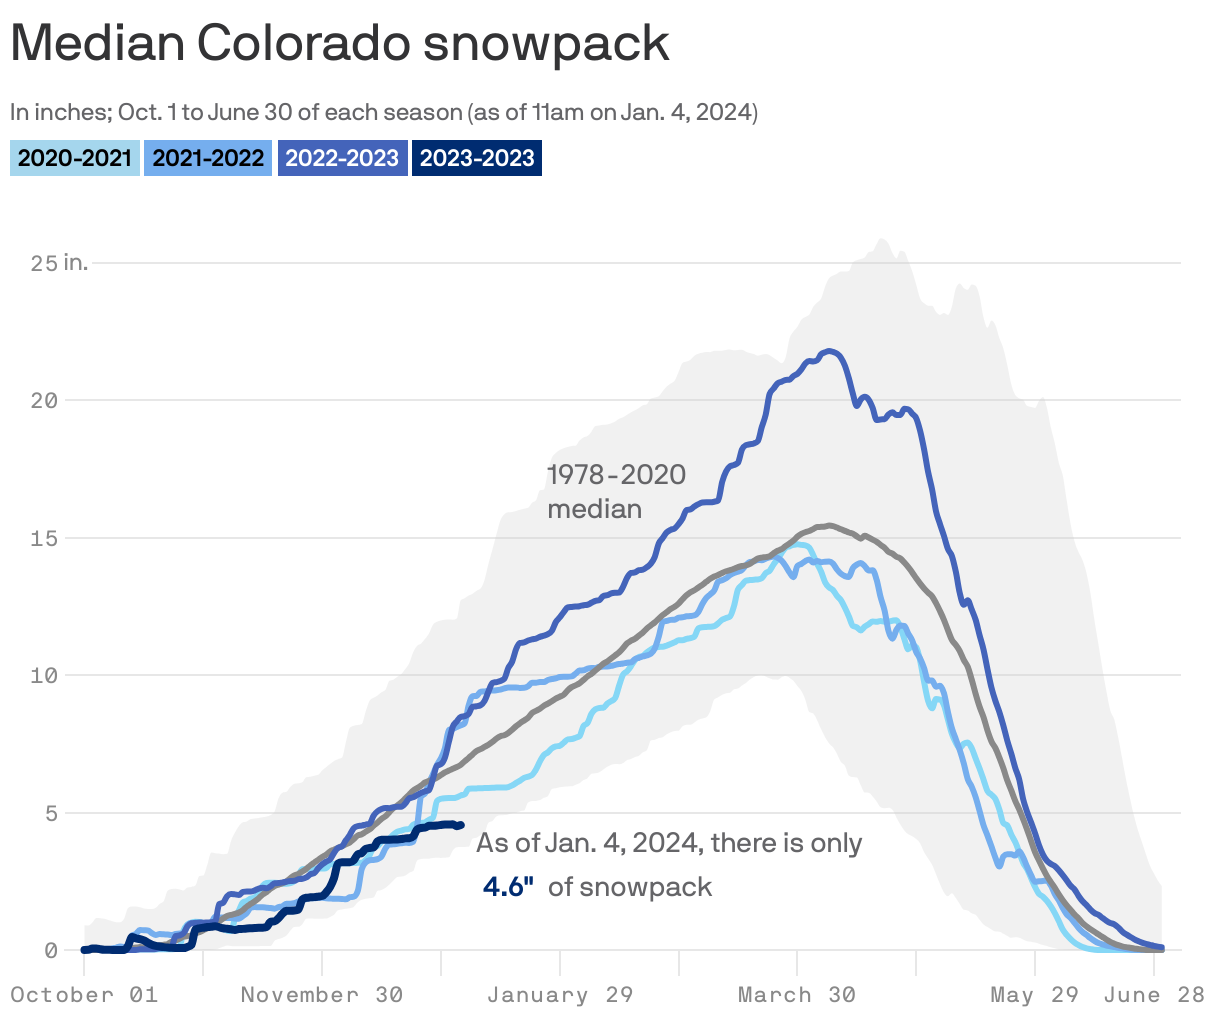 Median Colorado snowpack